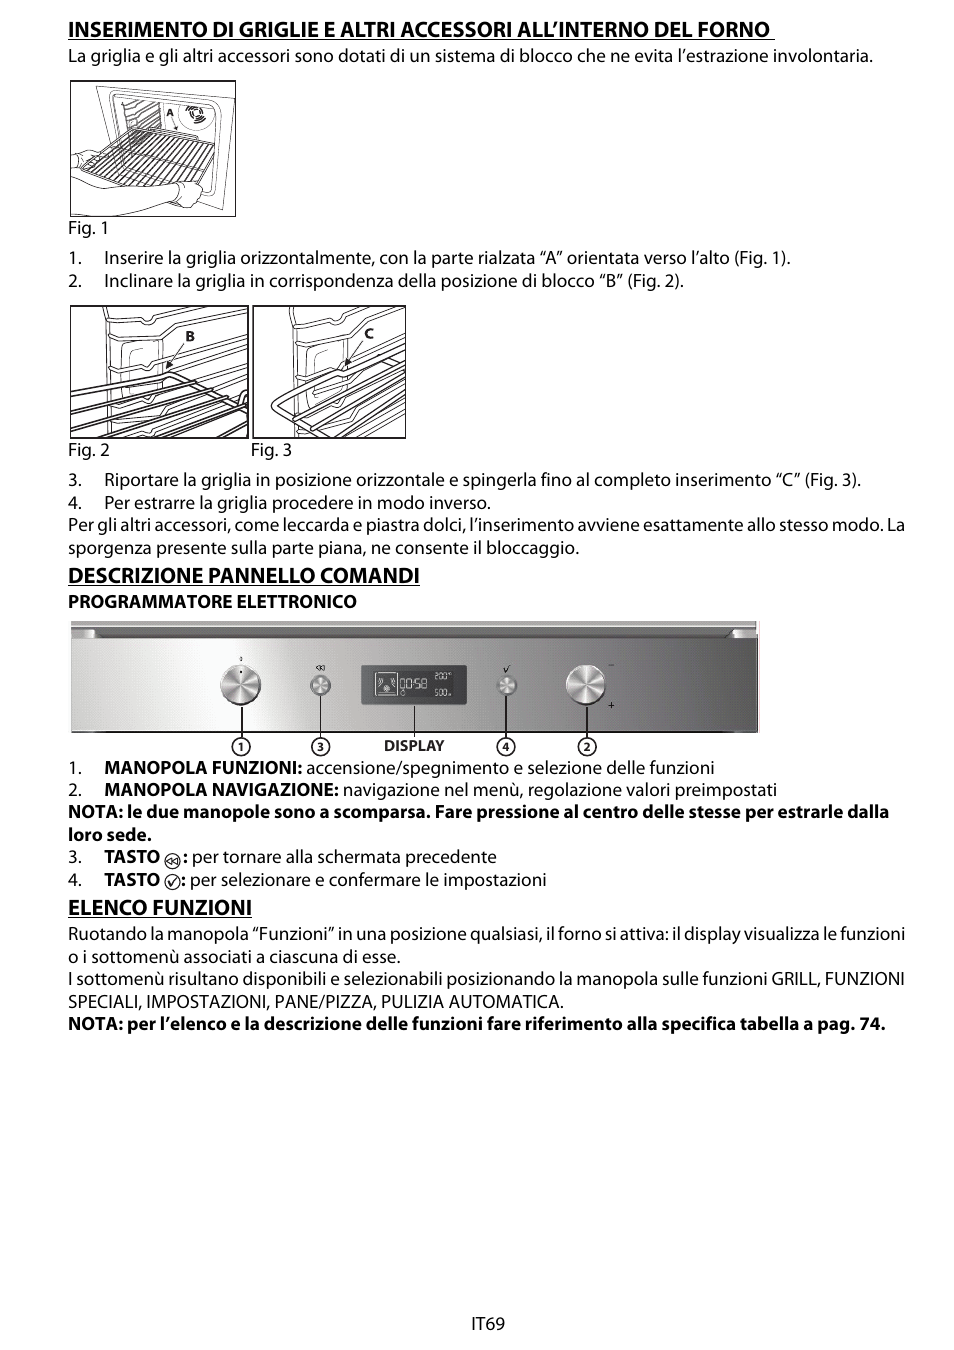 Descrizione pannello comandi, Elenco funzioni | Whirlpool AKZM 775-IXL Manuale d'uso | Pagina 9 / 20